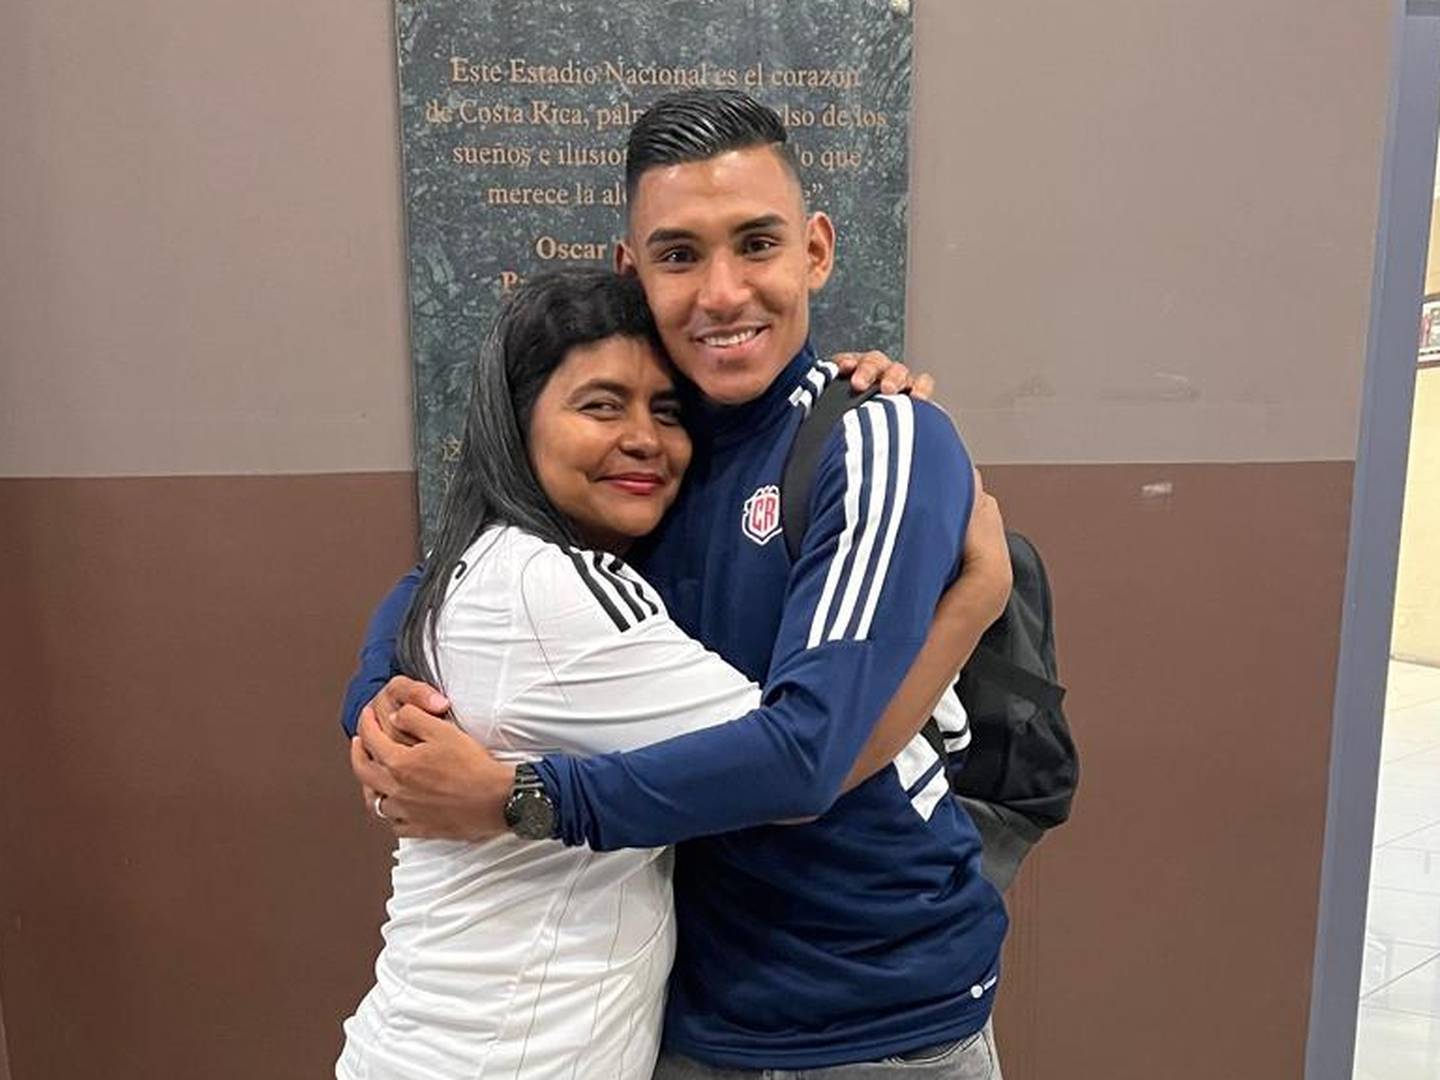 Haxzel Quirós junto con su madre, doña Isabel, ,quien viajó desde Chira para verlo jugar con la Selección de Costa Rica. Fotografía: Cortesía